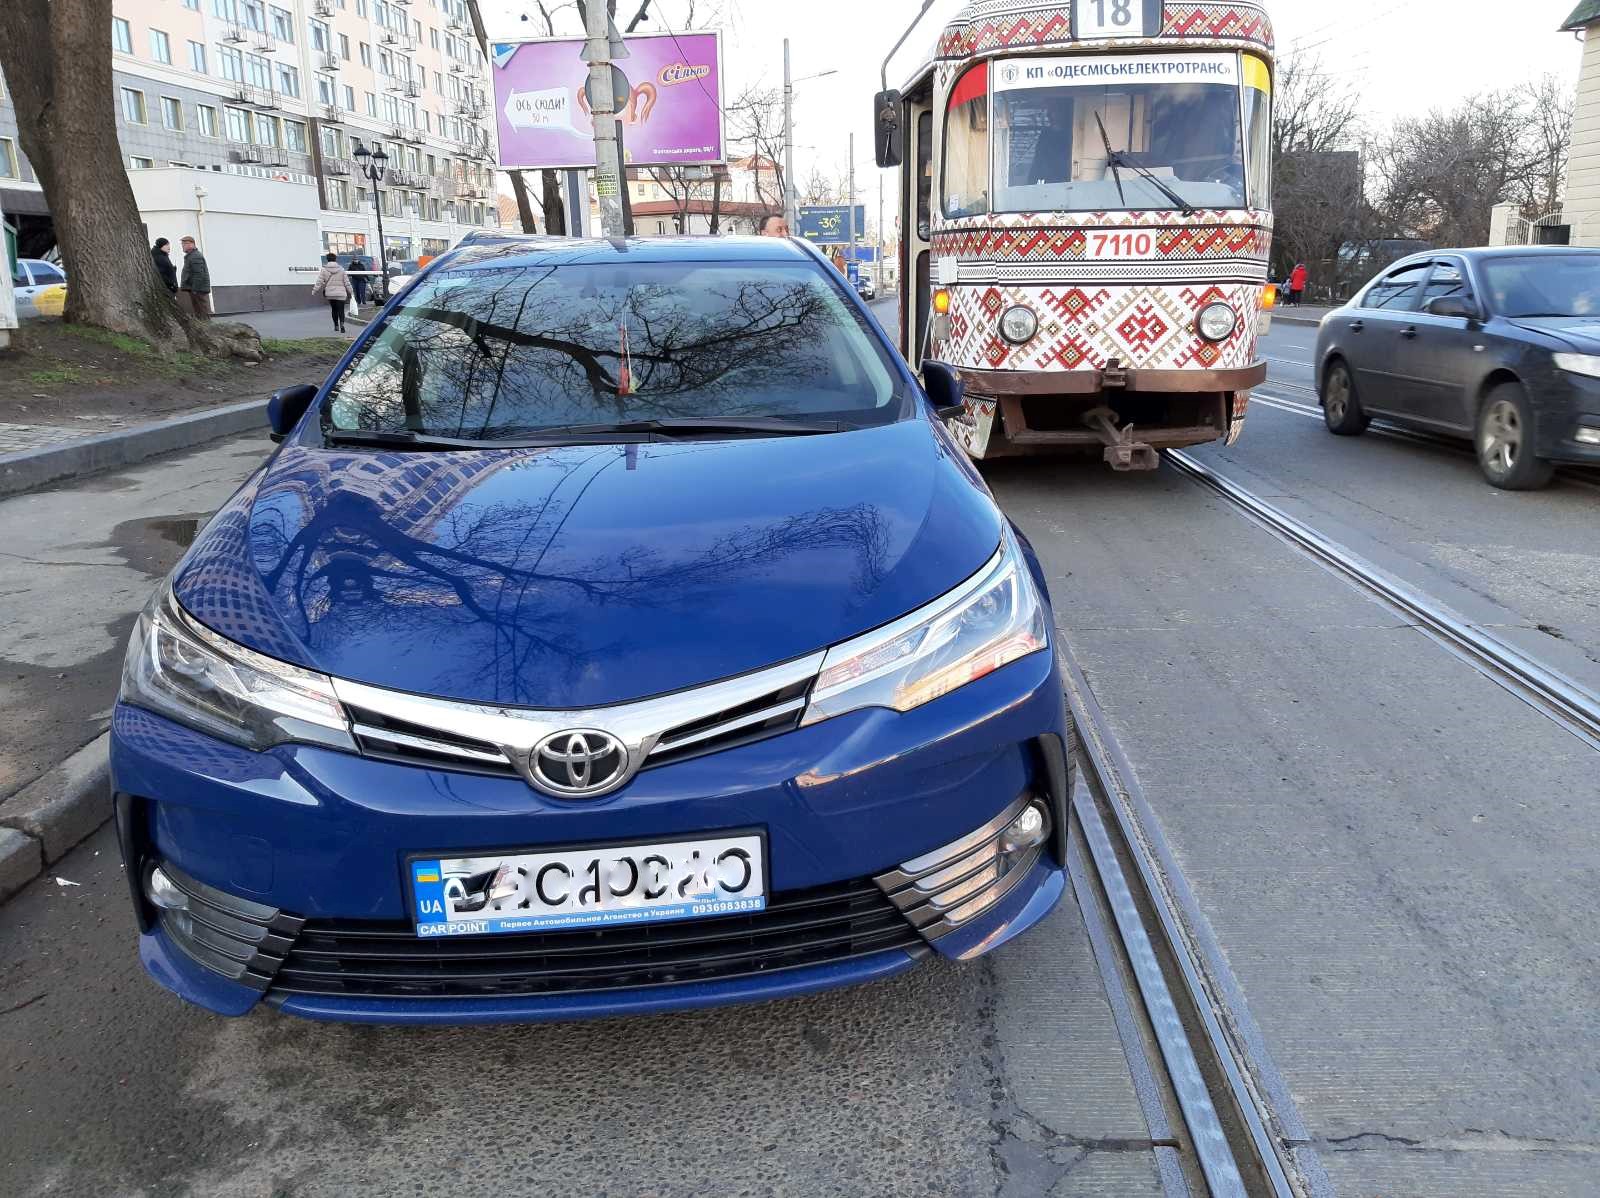 Подборка автохамов Одессы за конец января-начало февраля 2020 года